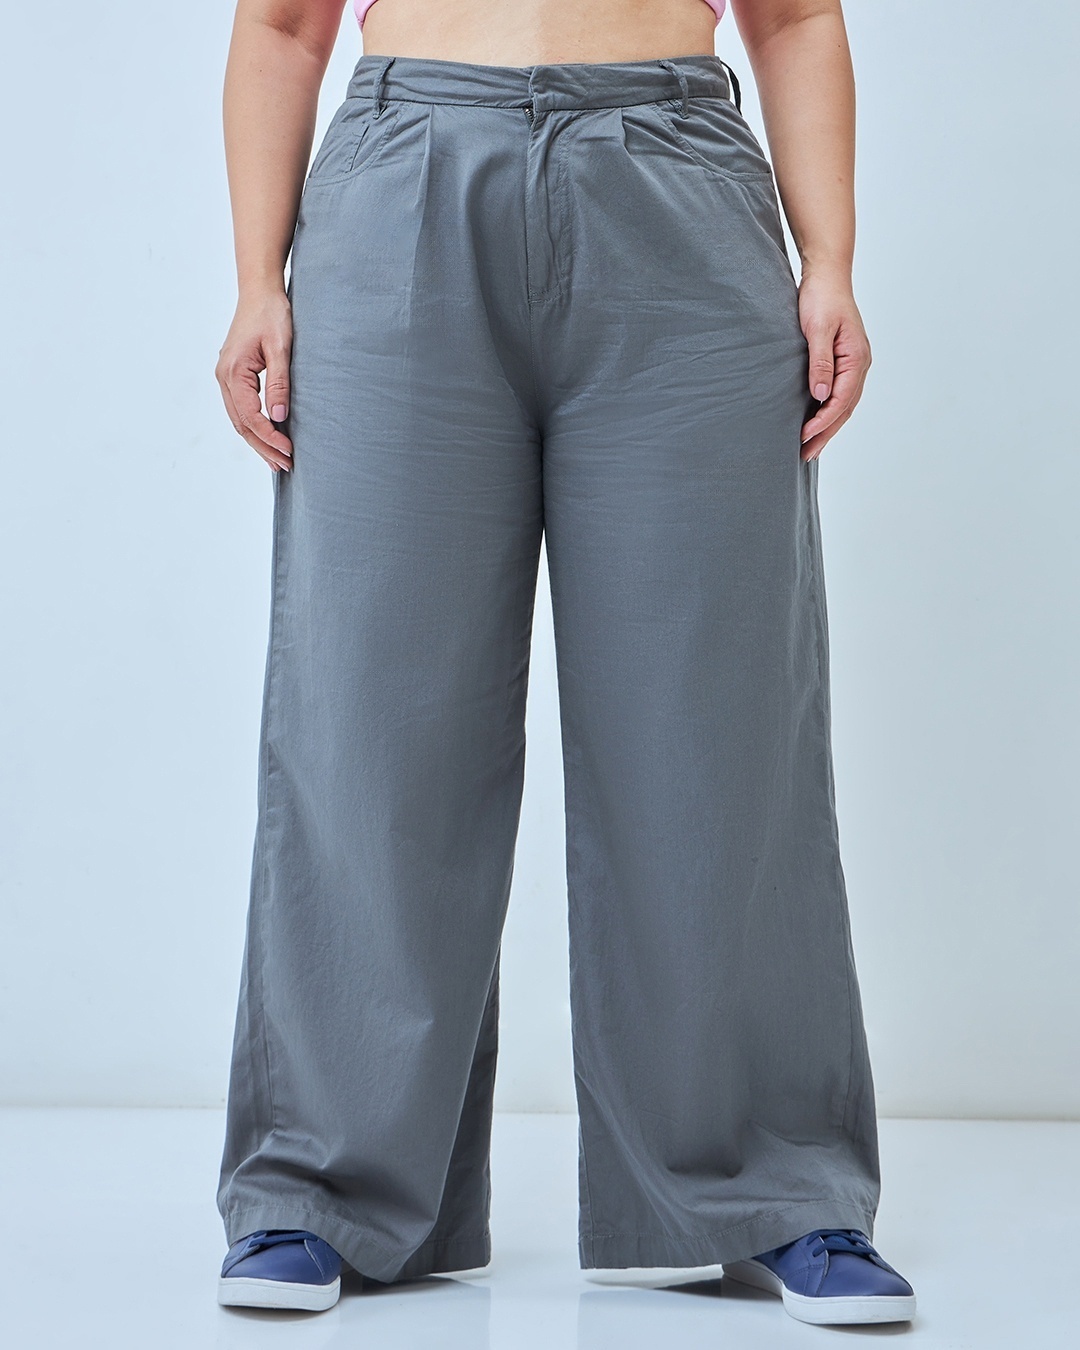 Loose Fit Linen Pants - Light beige - Men | H&M US